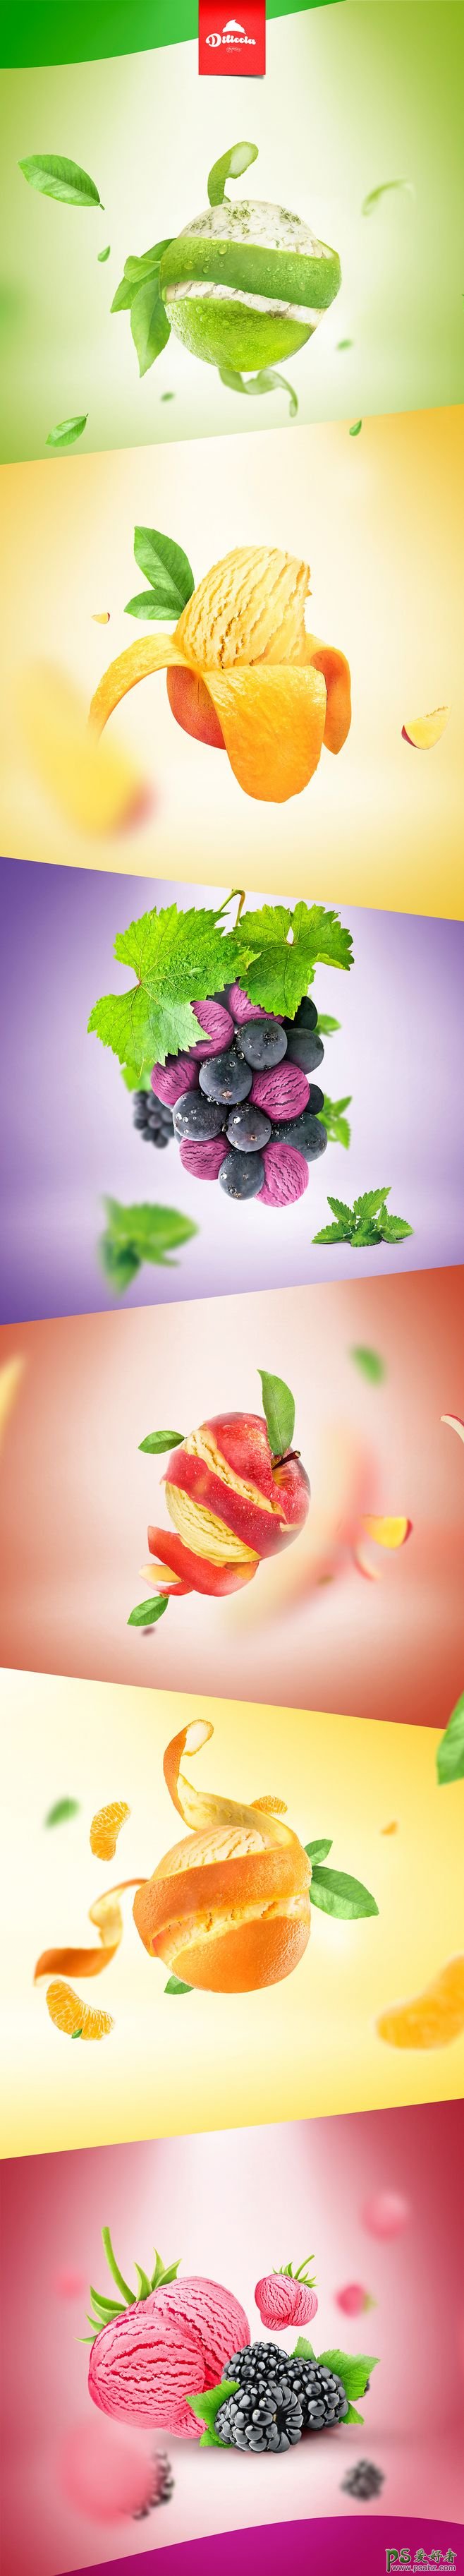 浓香果味食品广告设计，香气十足的果味产品宣传海报设计。